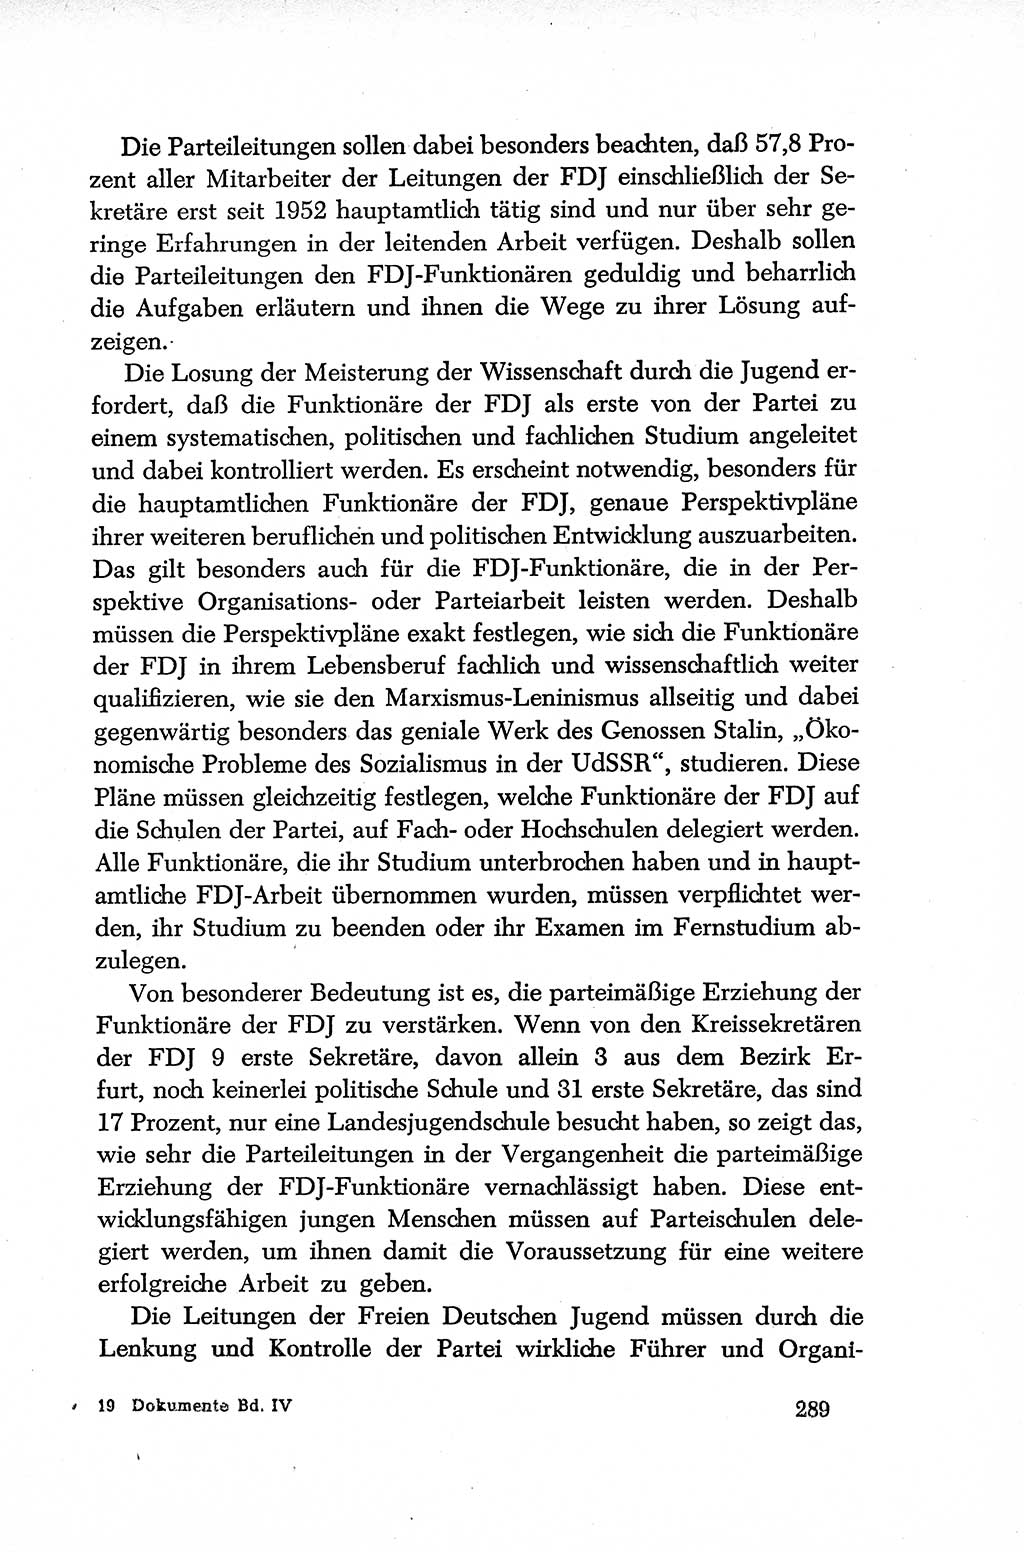 Dokumente der Sozialistischen Einheitspartei Deutschlands (SED) [Deutsche Demokratische Republik (DDR)] 1952-1953, Seite 289 (Dok. SED DDR 1952-1953, S. 289)